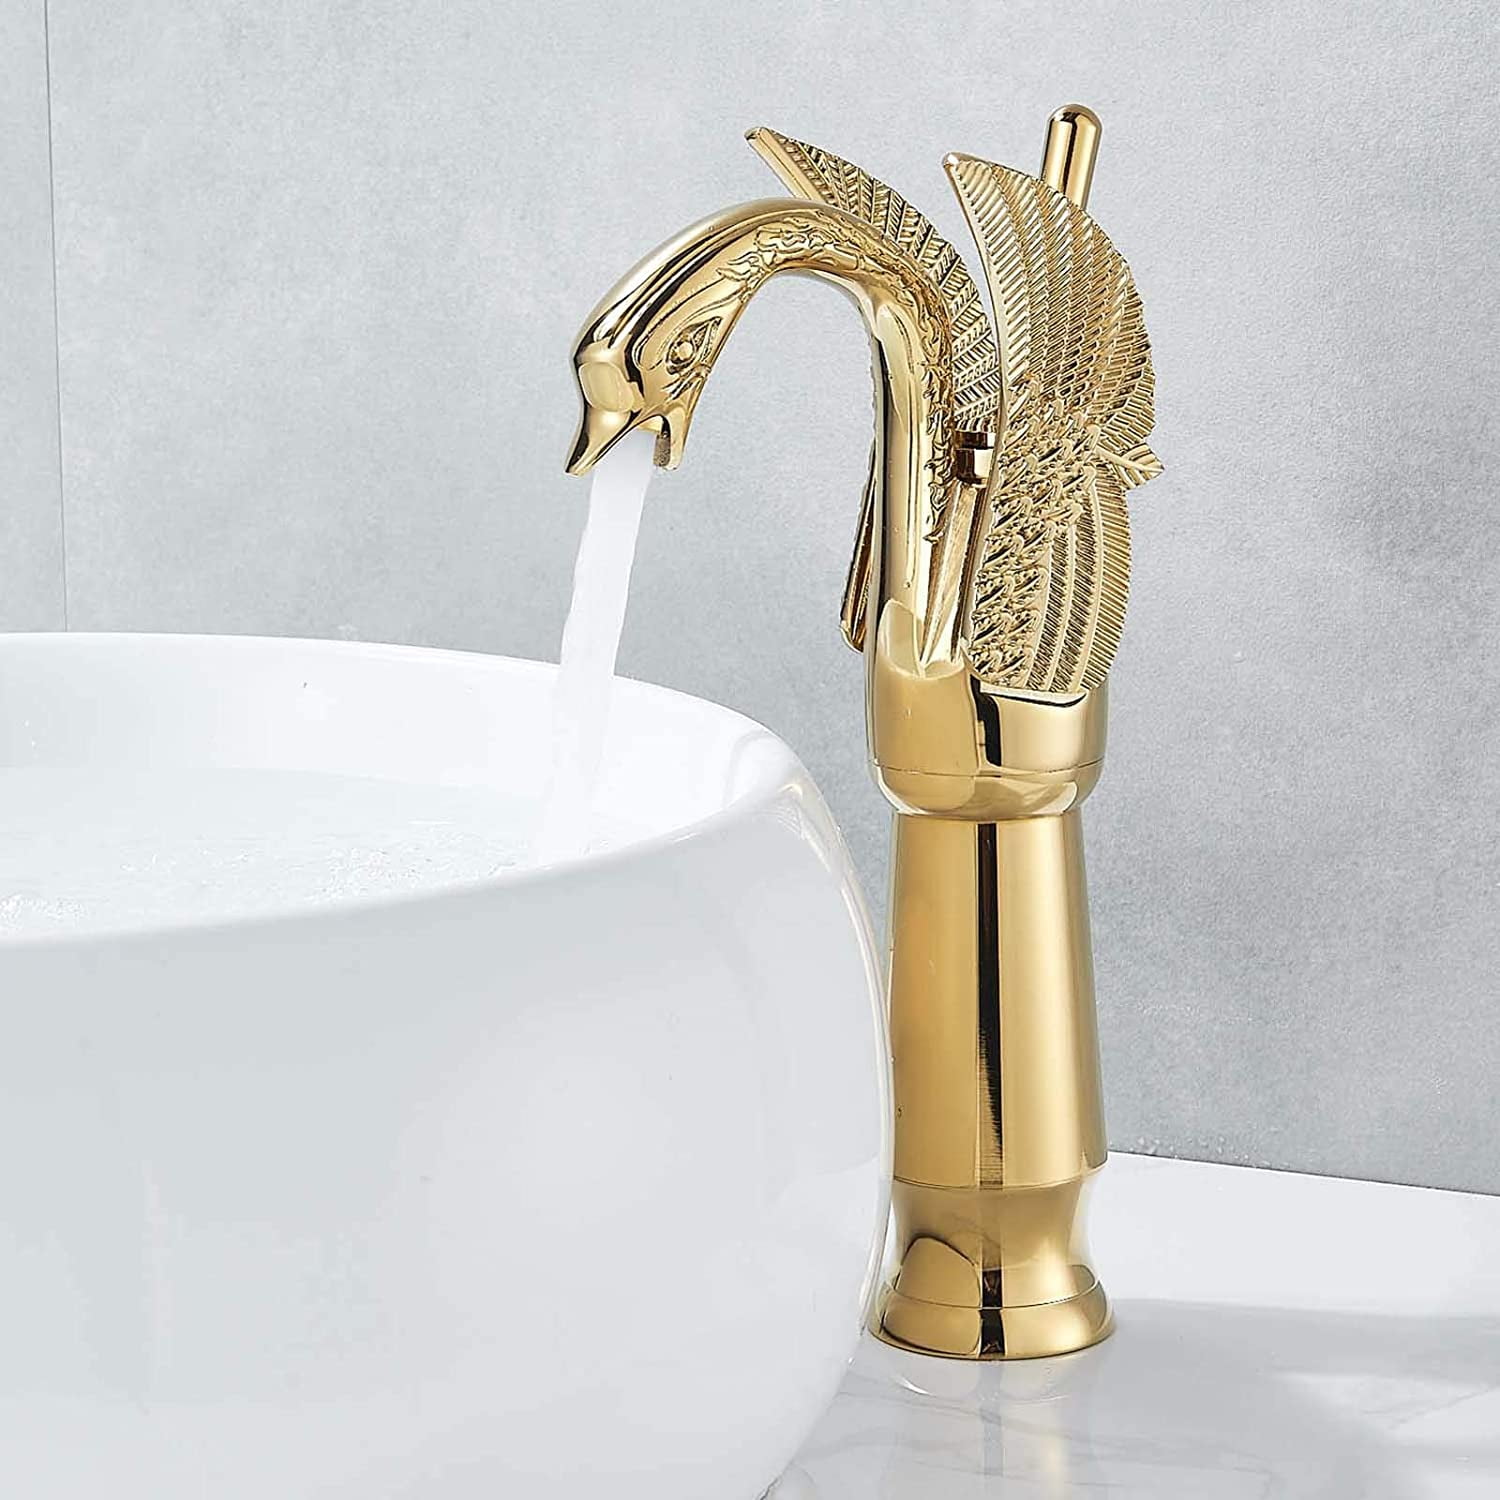 Details about   Bathroom Basin Sink Faucet Mixer Nozzle Spout Tap Brass Deck Mount Single Handle 